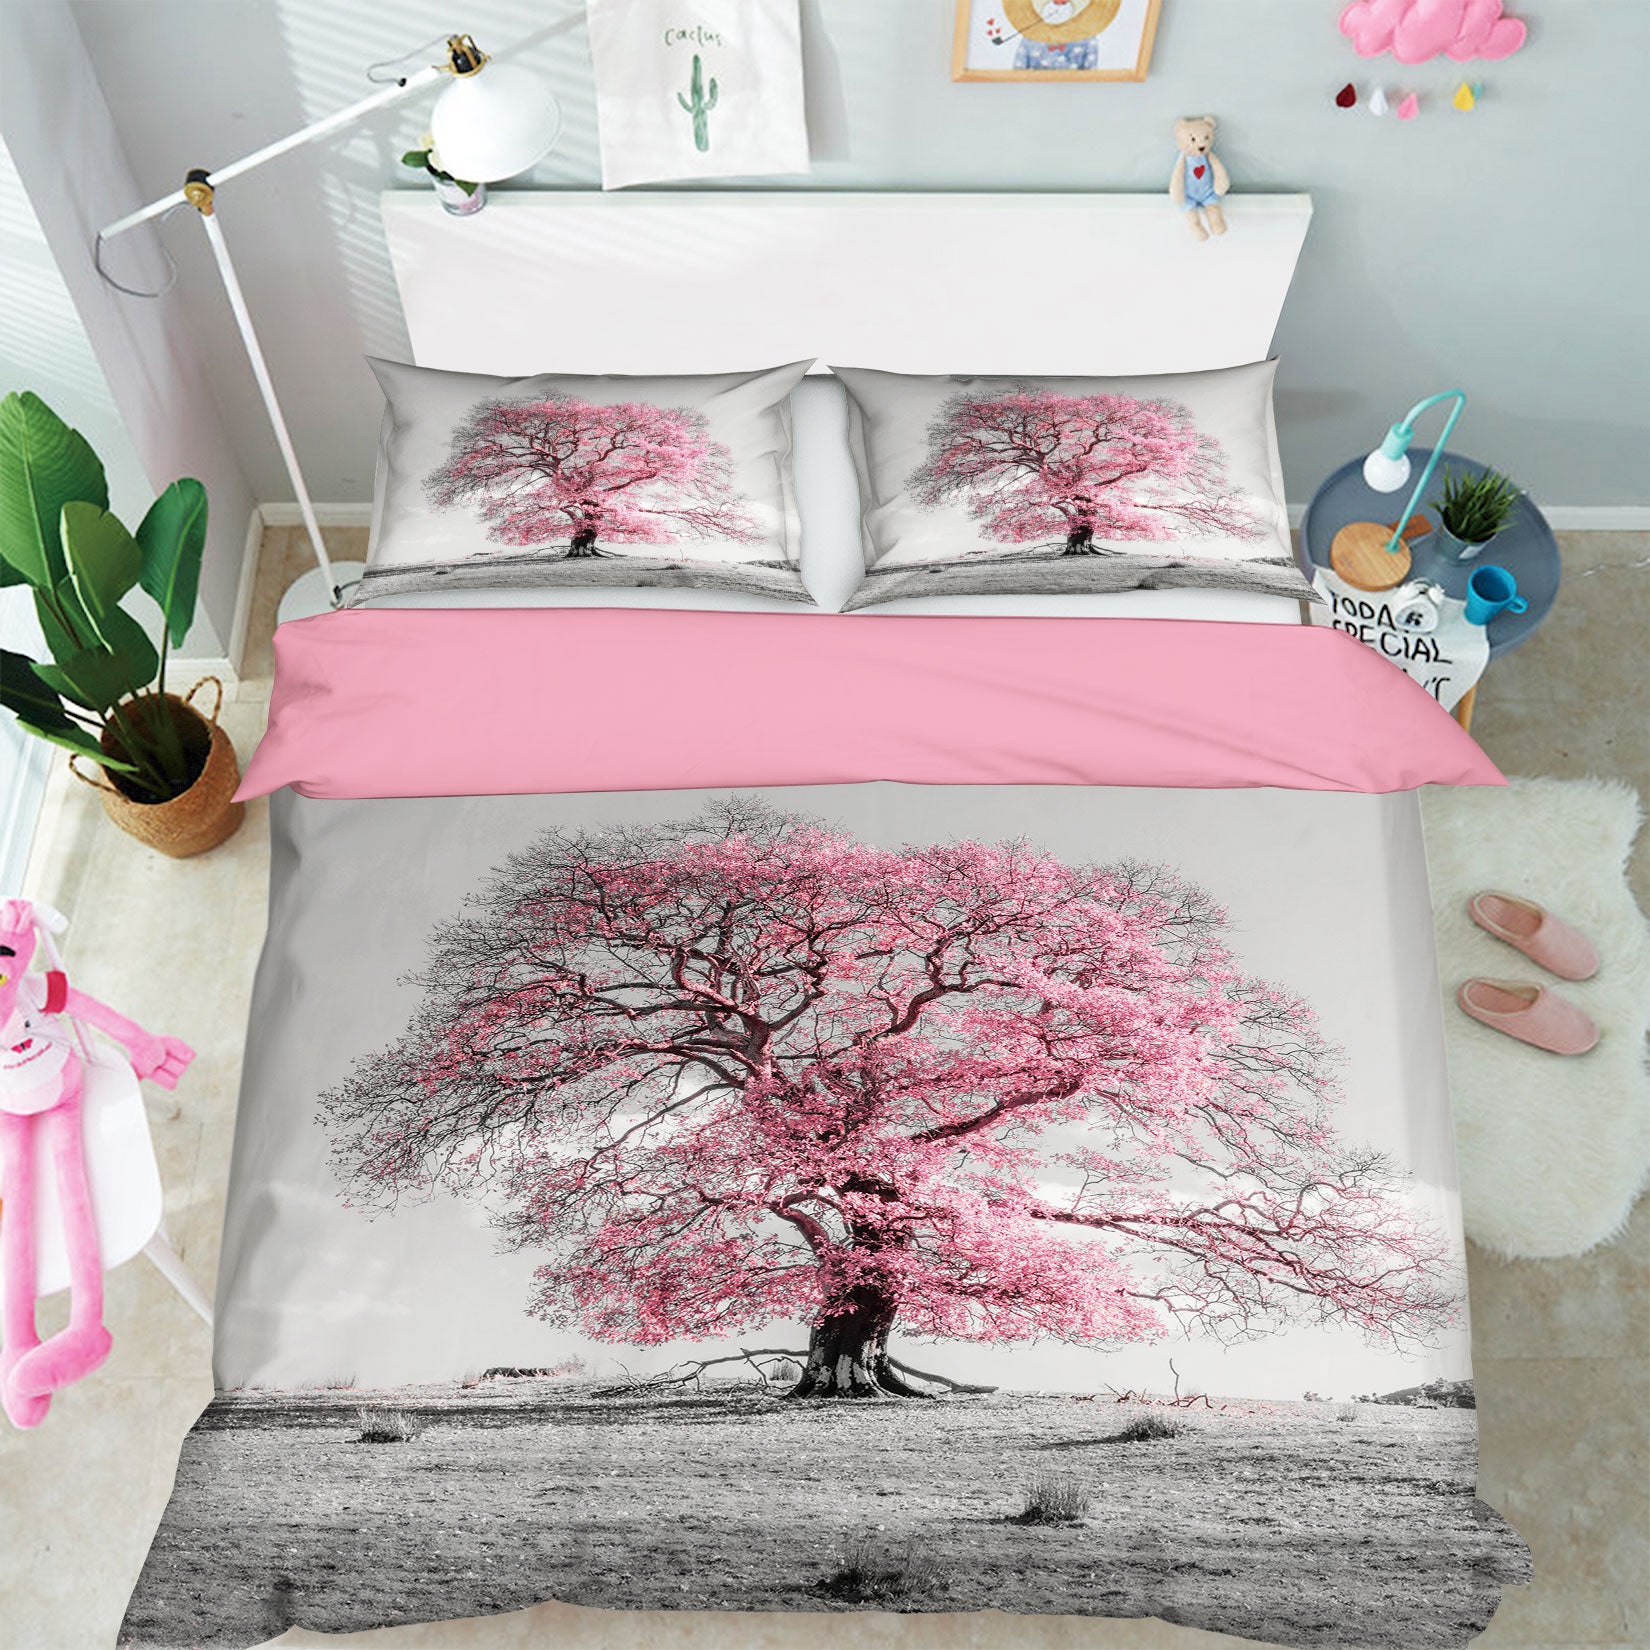 3D Cherry Blossoms 1071 Assaf Frank Bedding Bed Pillowcases Quilt